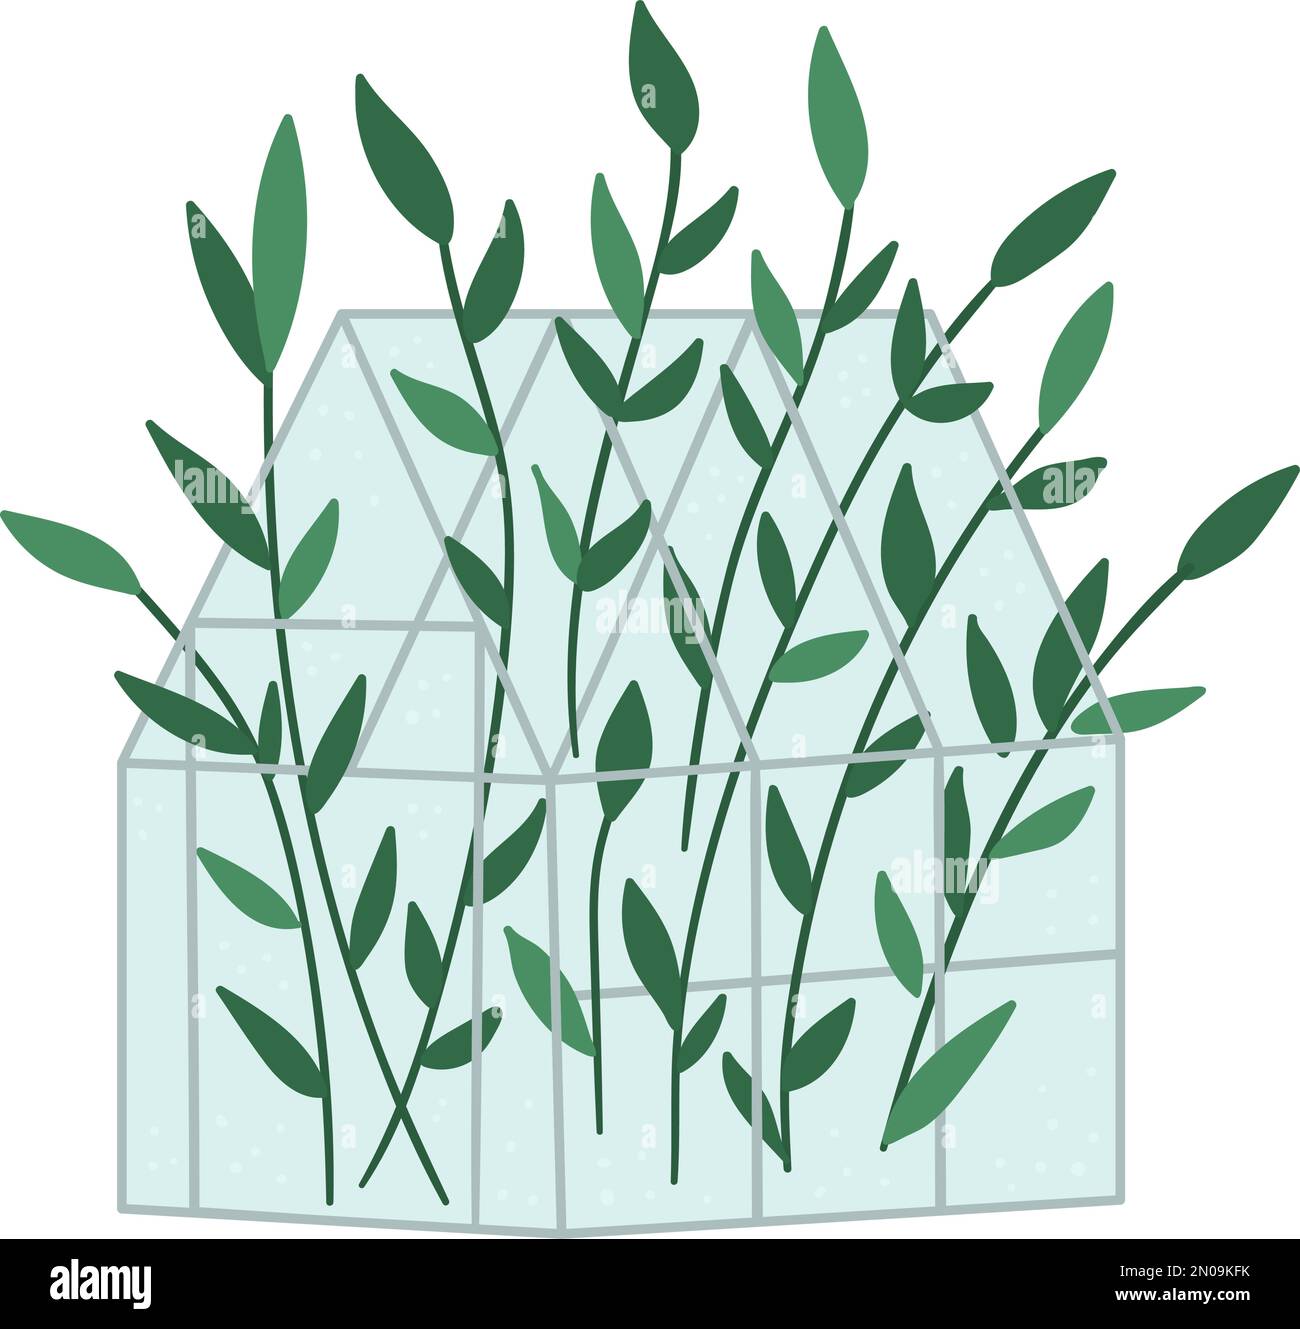 Vektorgewächse mit grünen Pflanzen. Abbildung eines flachen heißen Hauses isoliert auf weißem Hintergrund. Seitenansicht Grünzimmerbild. Illustration des Frühlingsgartens Stock Vektor